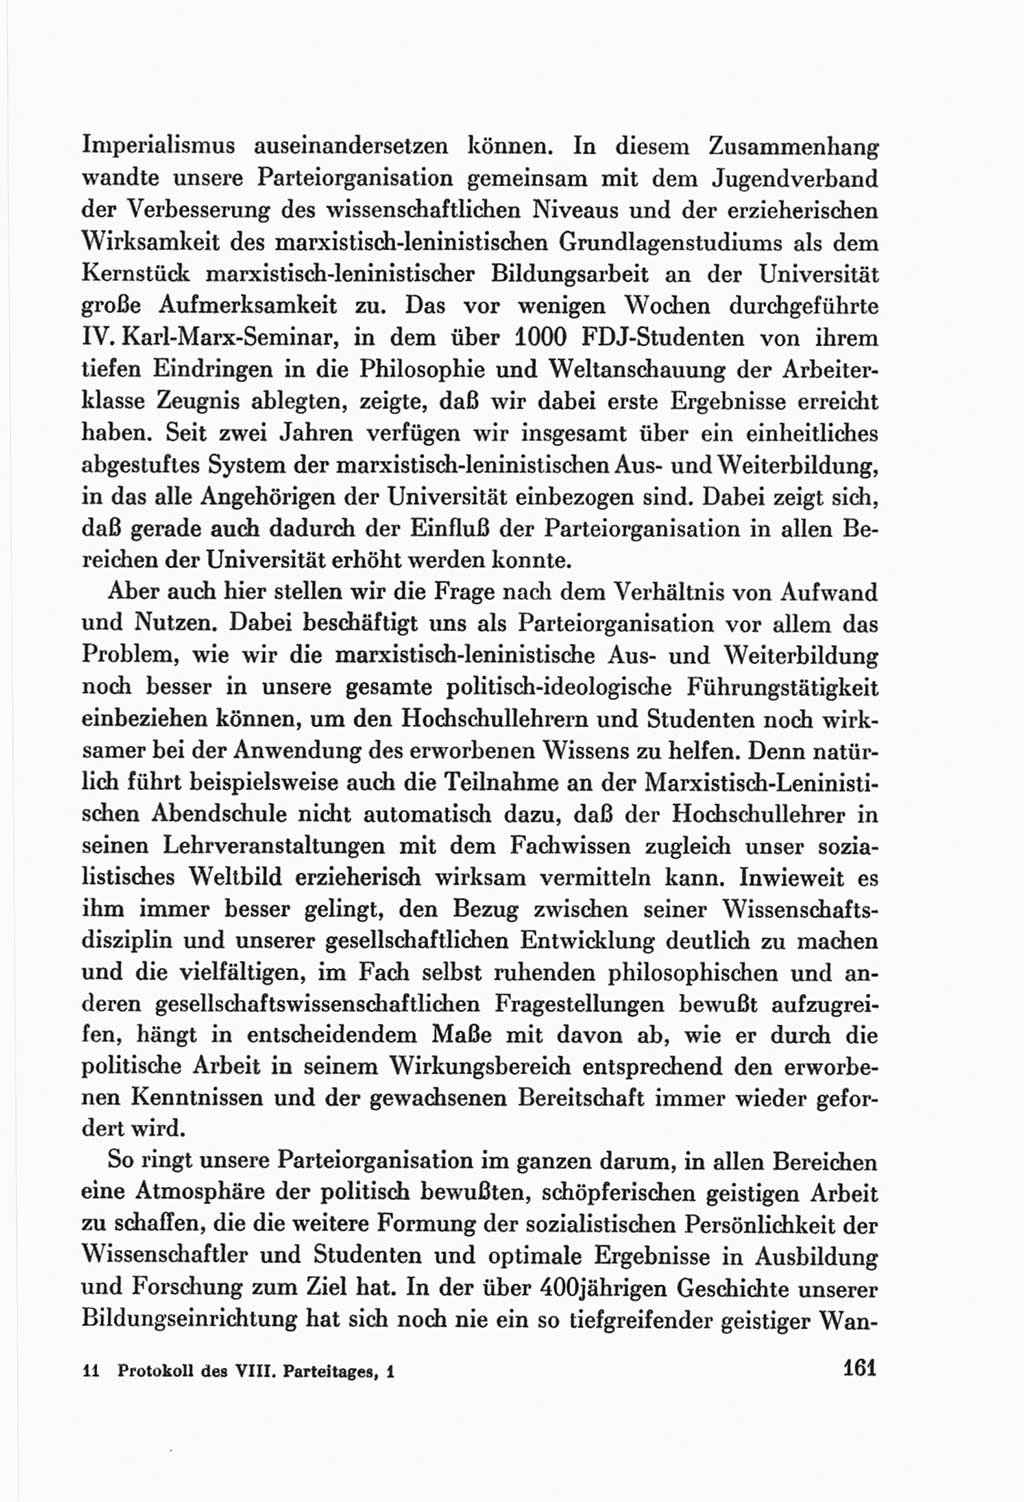 Protokoll der Verhandlungen des Ⅷ. Parteitages der Sozialistischen Einheitspartei Deutschlands (SED) [Deutsche Demokratische Republik (DDR)] 1971, Band 1, Seite 161 (Prot. Verh. Ⅷ. PT SED DDR 1971, Bd. 1, S. 161)